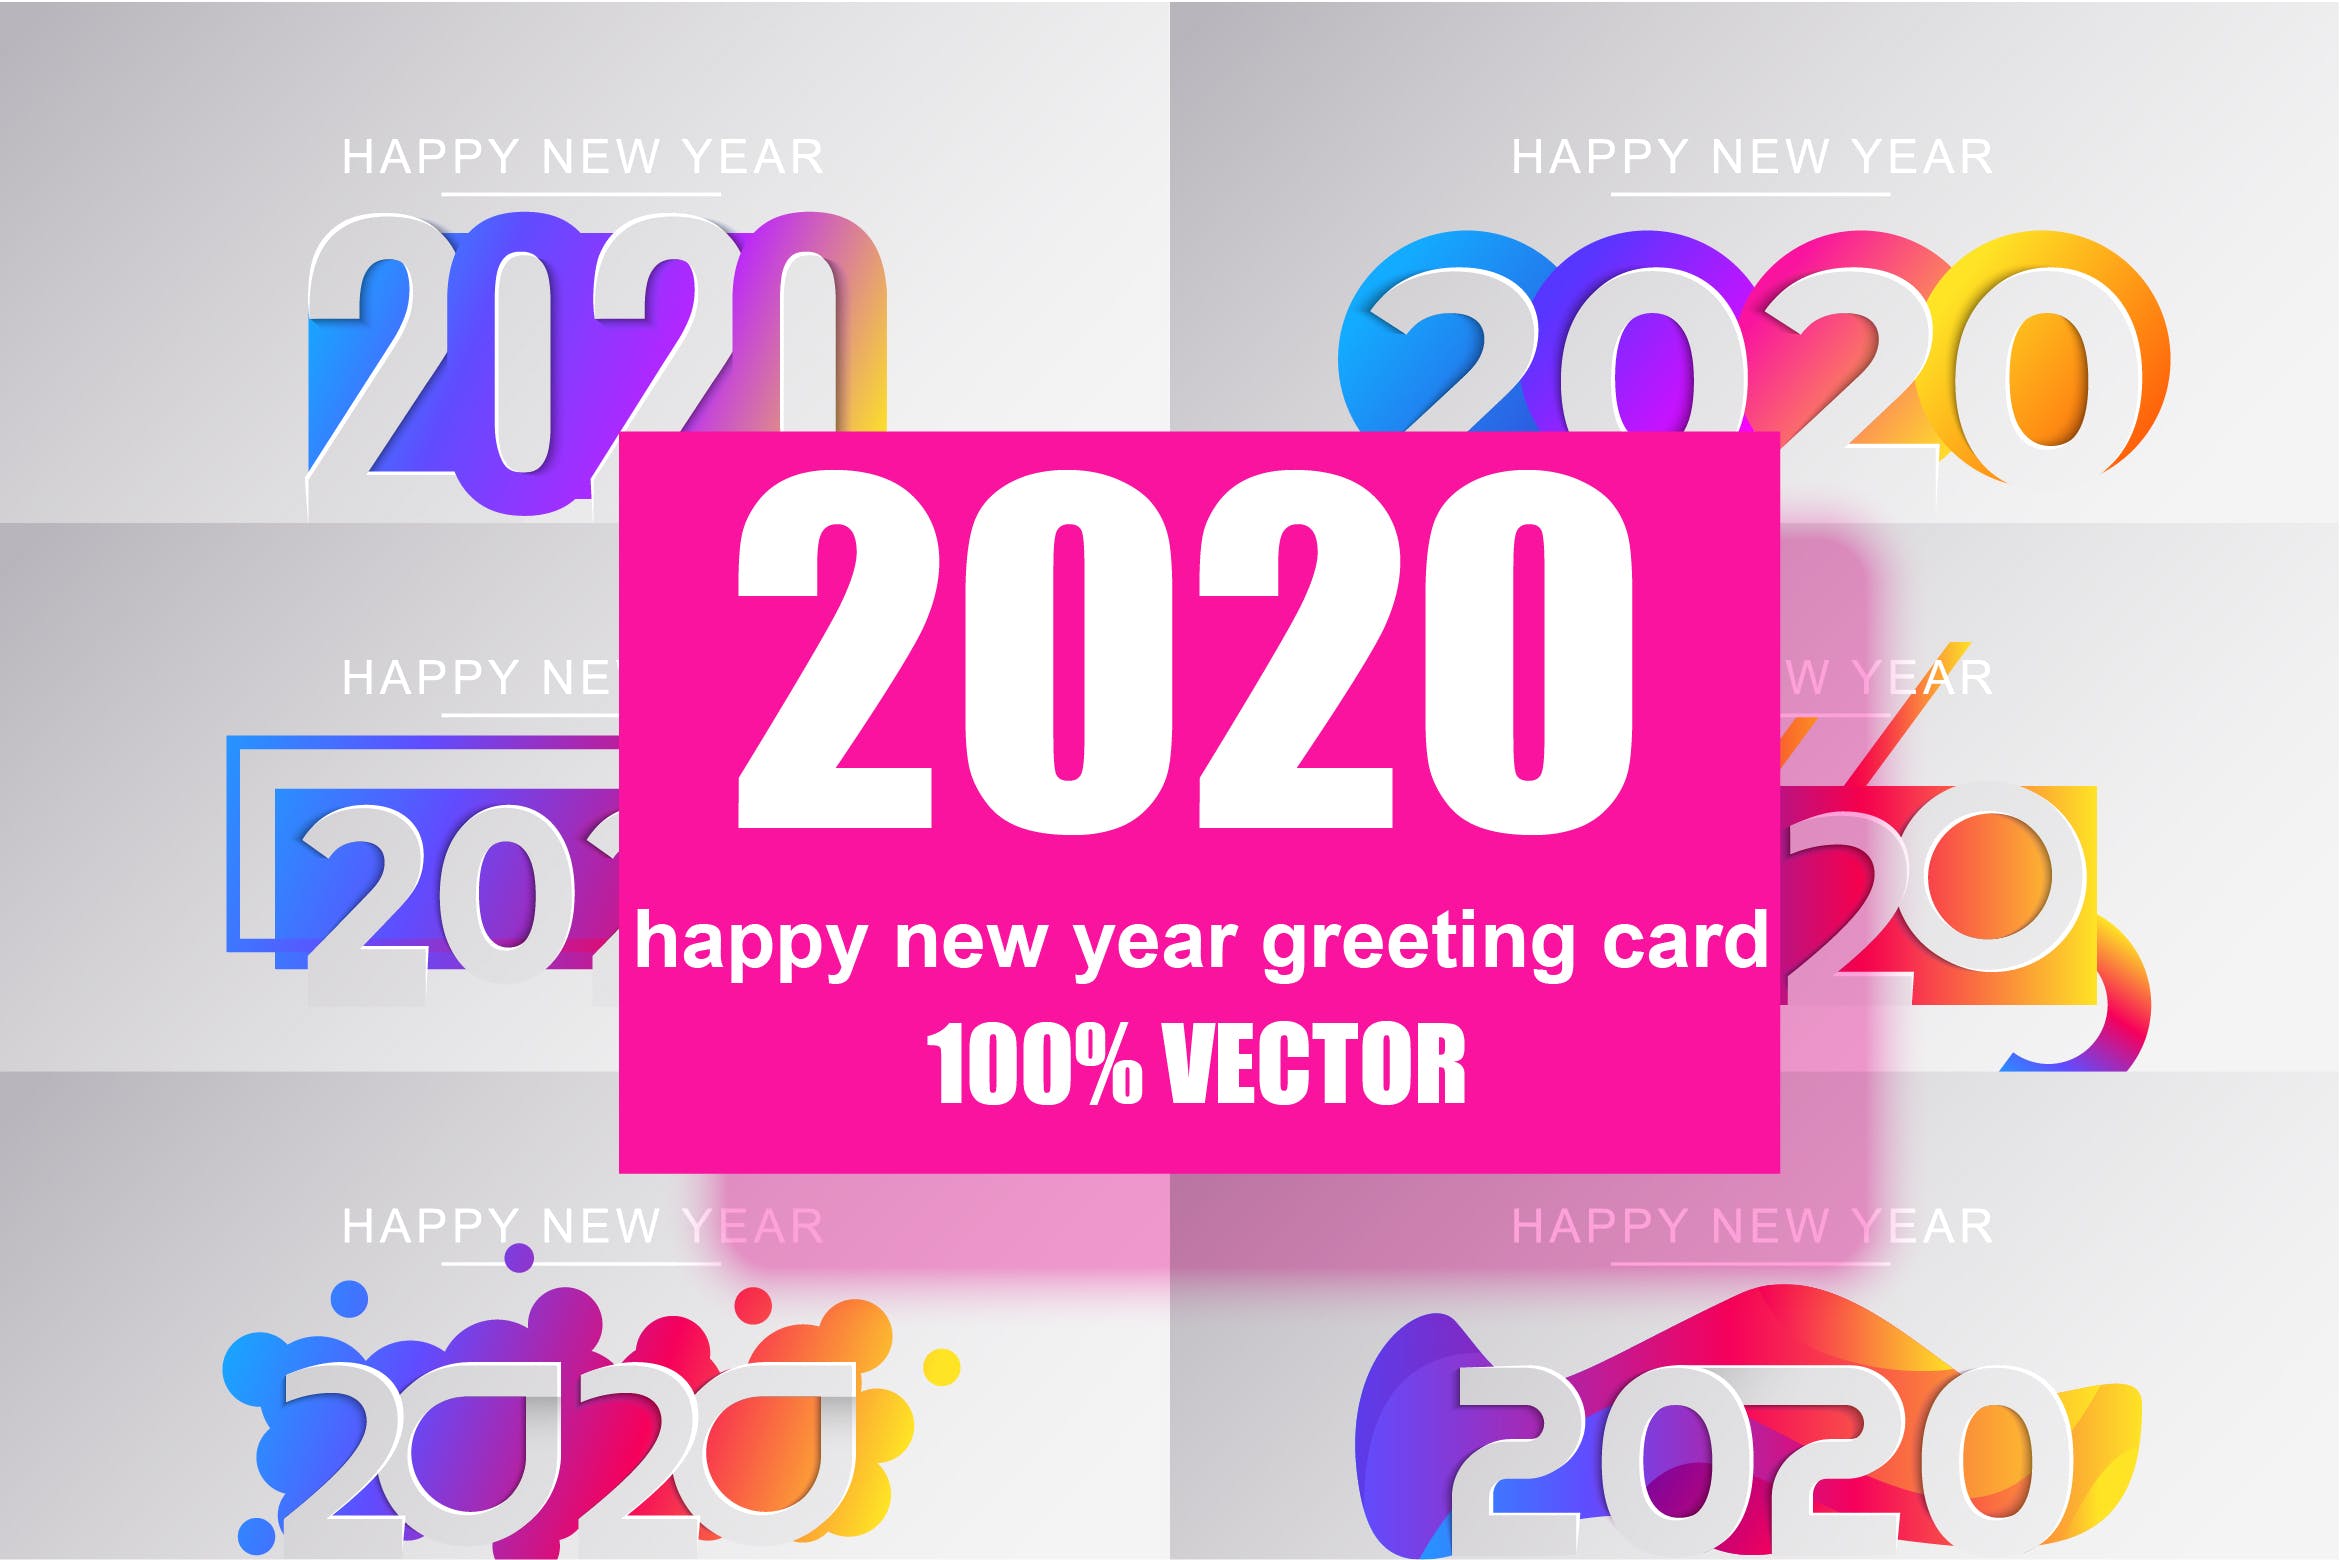 新年数字彩色矢量设计图形素材 Happy New Year Greeting Card 大洋岛素材